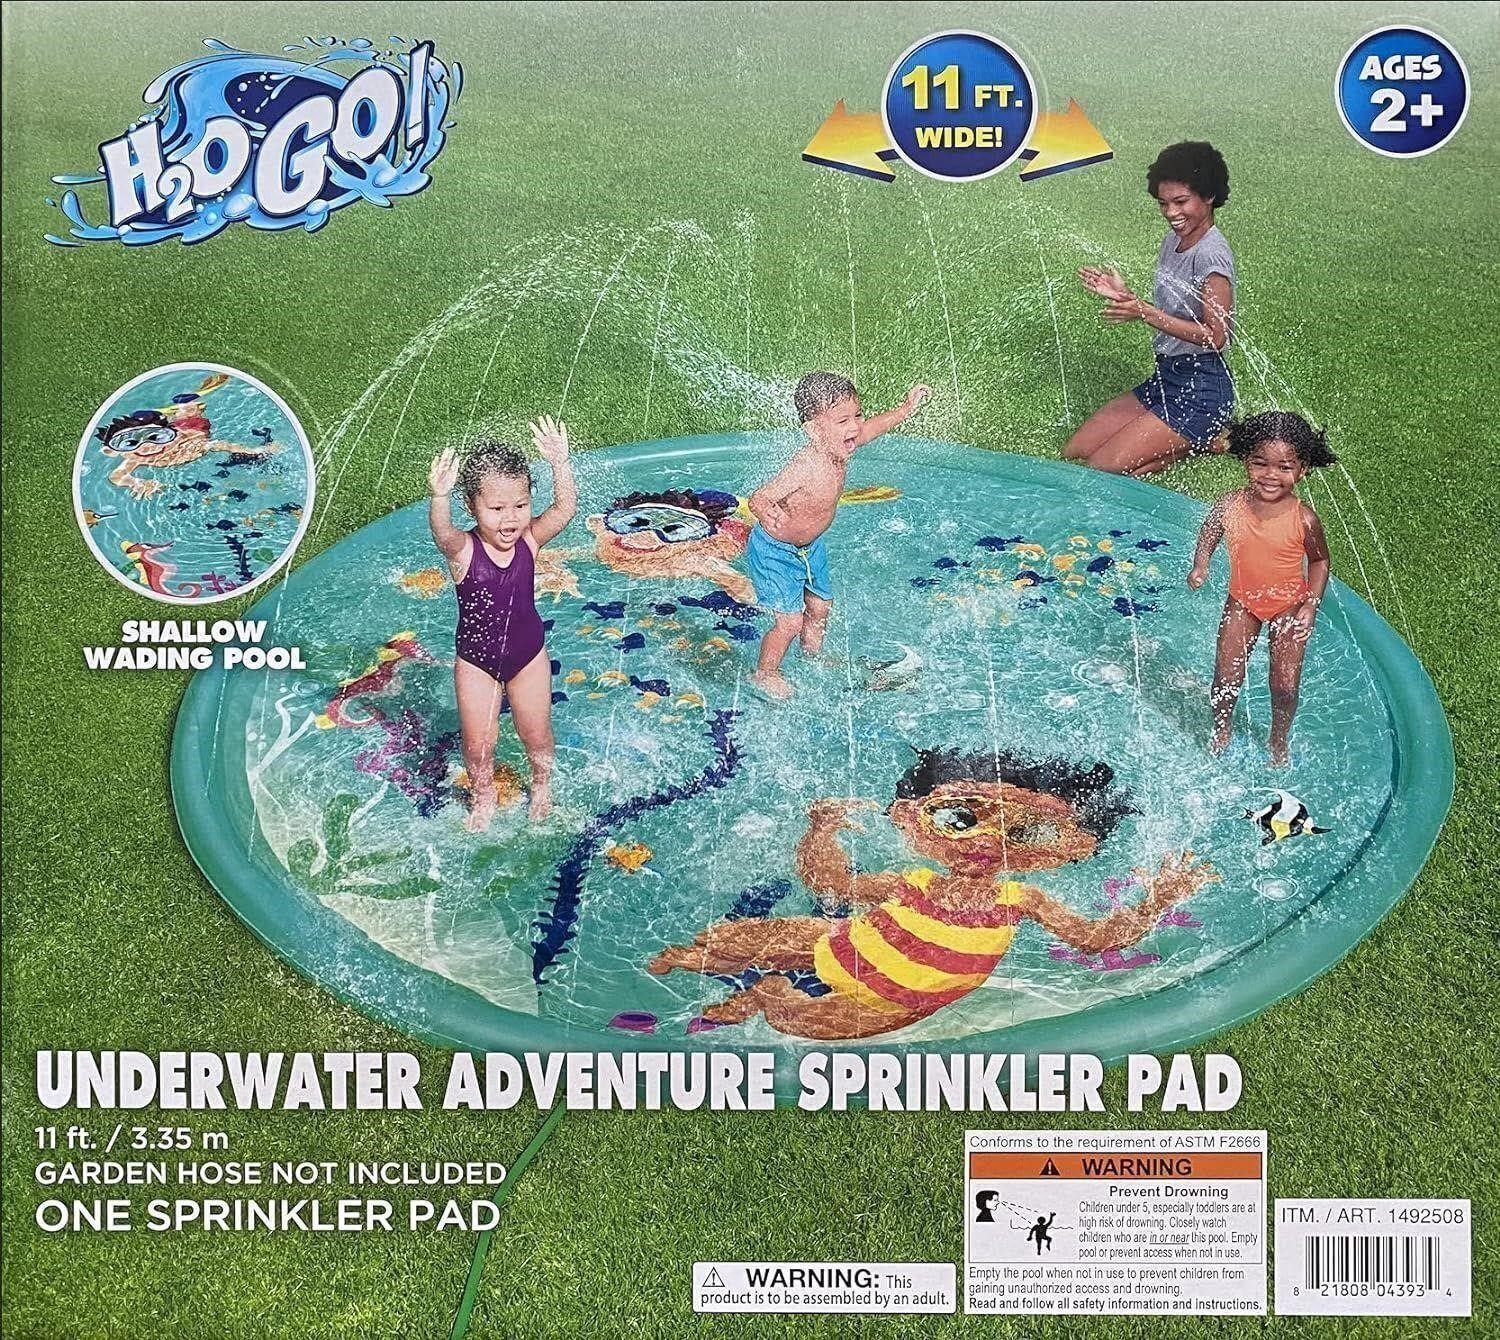 Bestway H20Go Underwater Adventure Sprinkler Pad